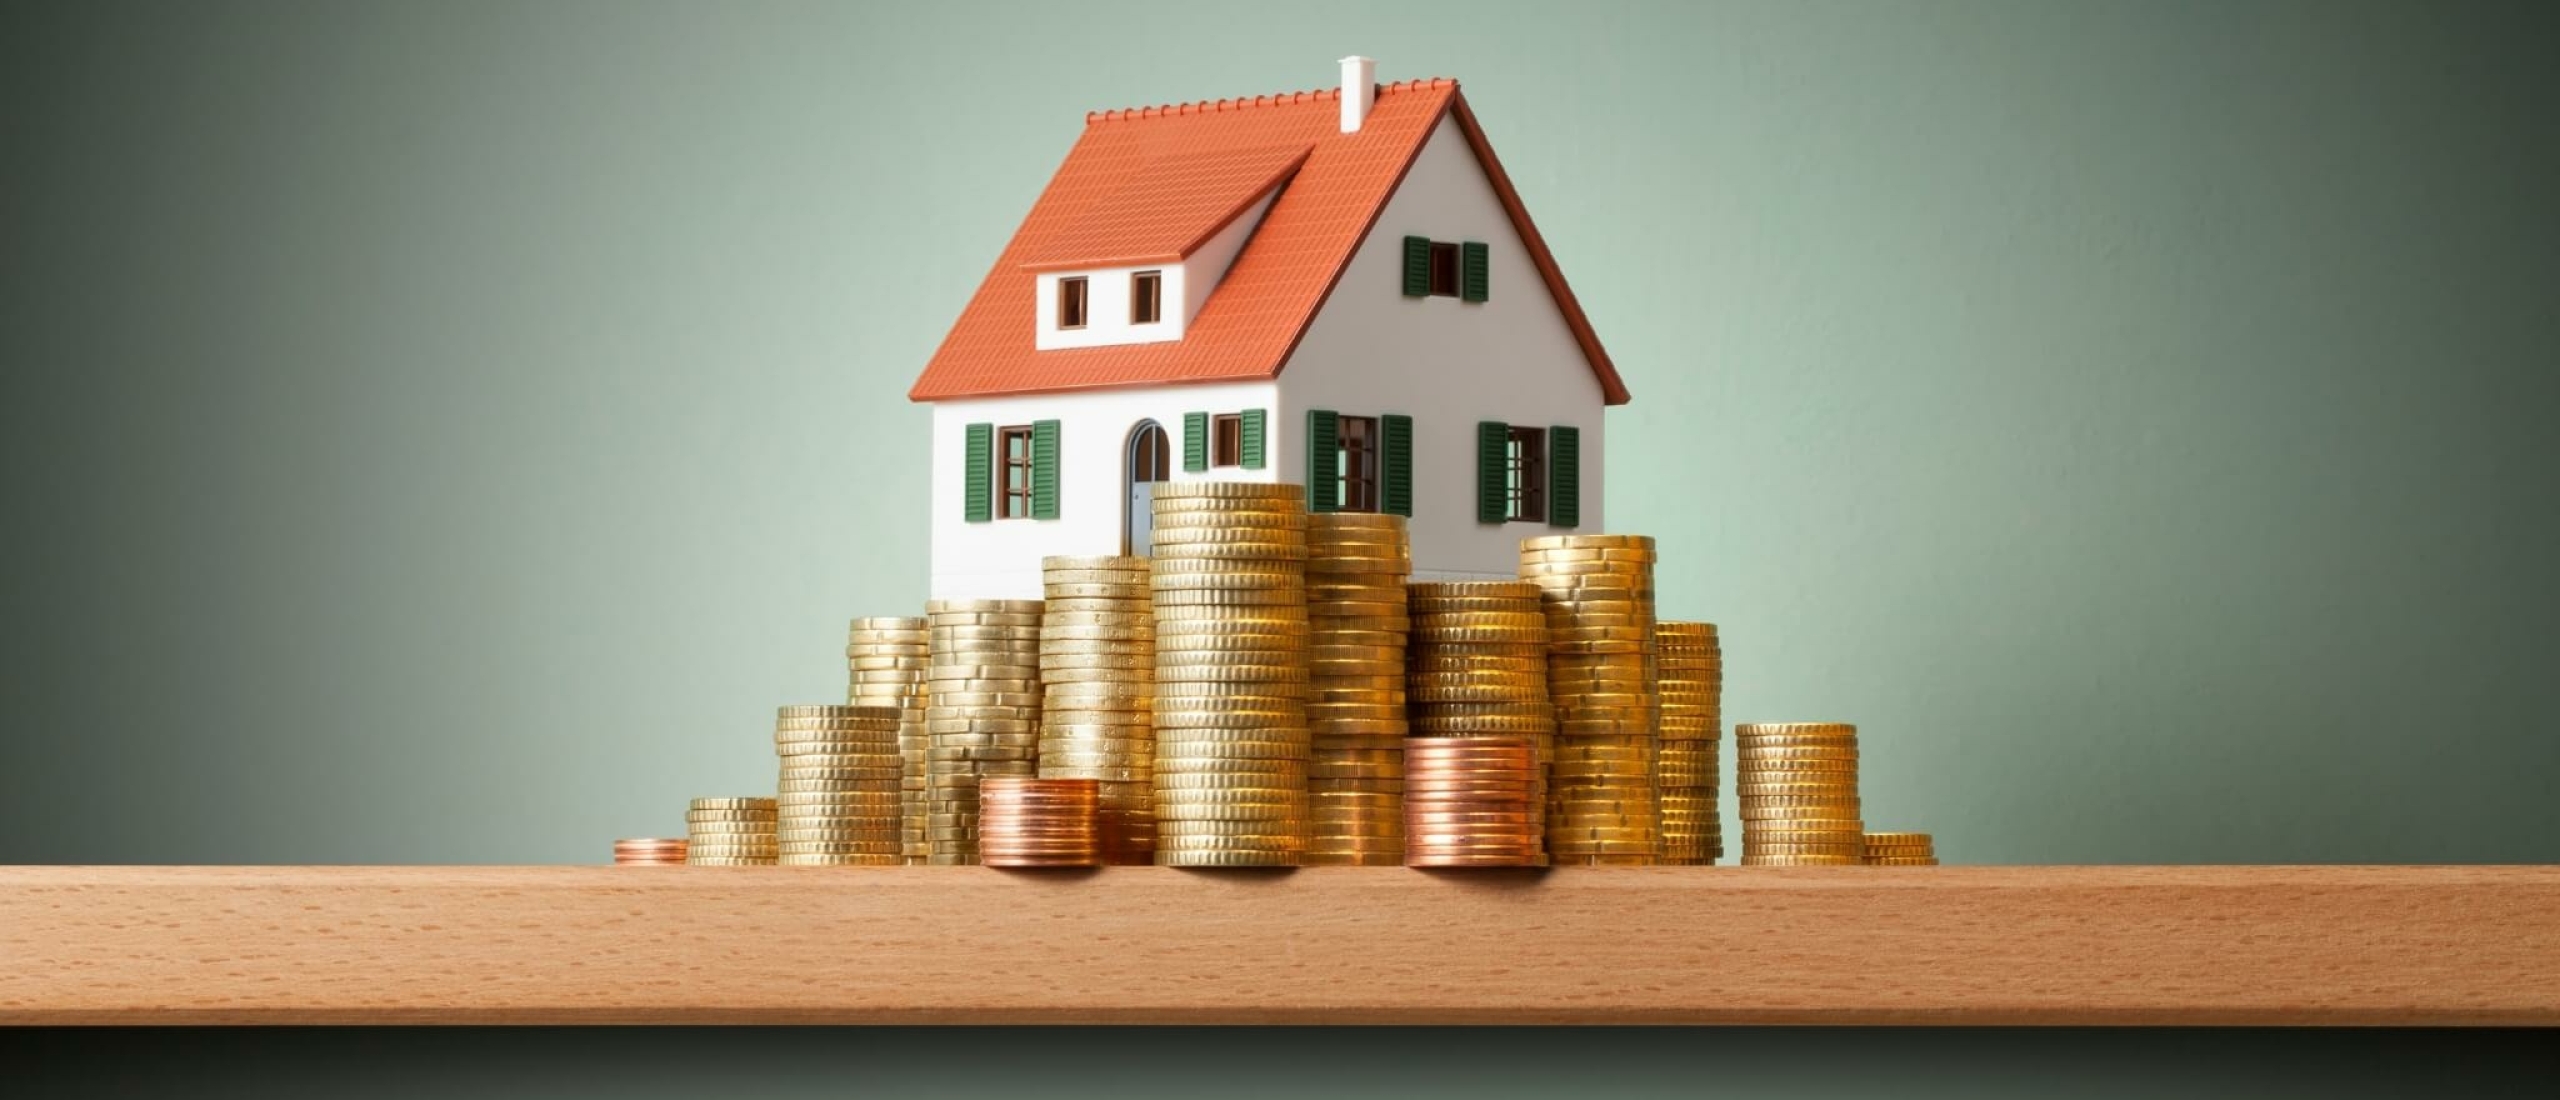 Welke belasting betaal je als eigenaar van een huis?